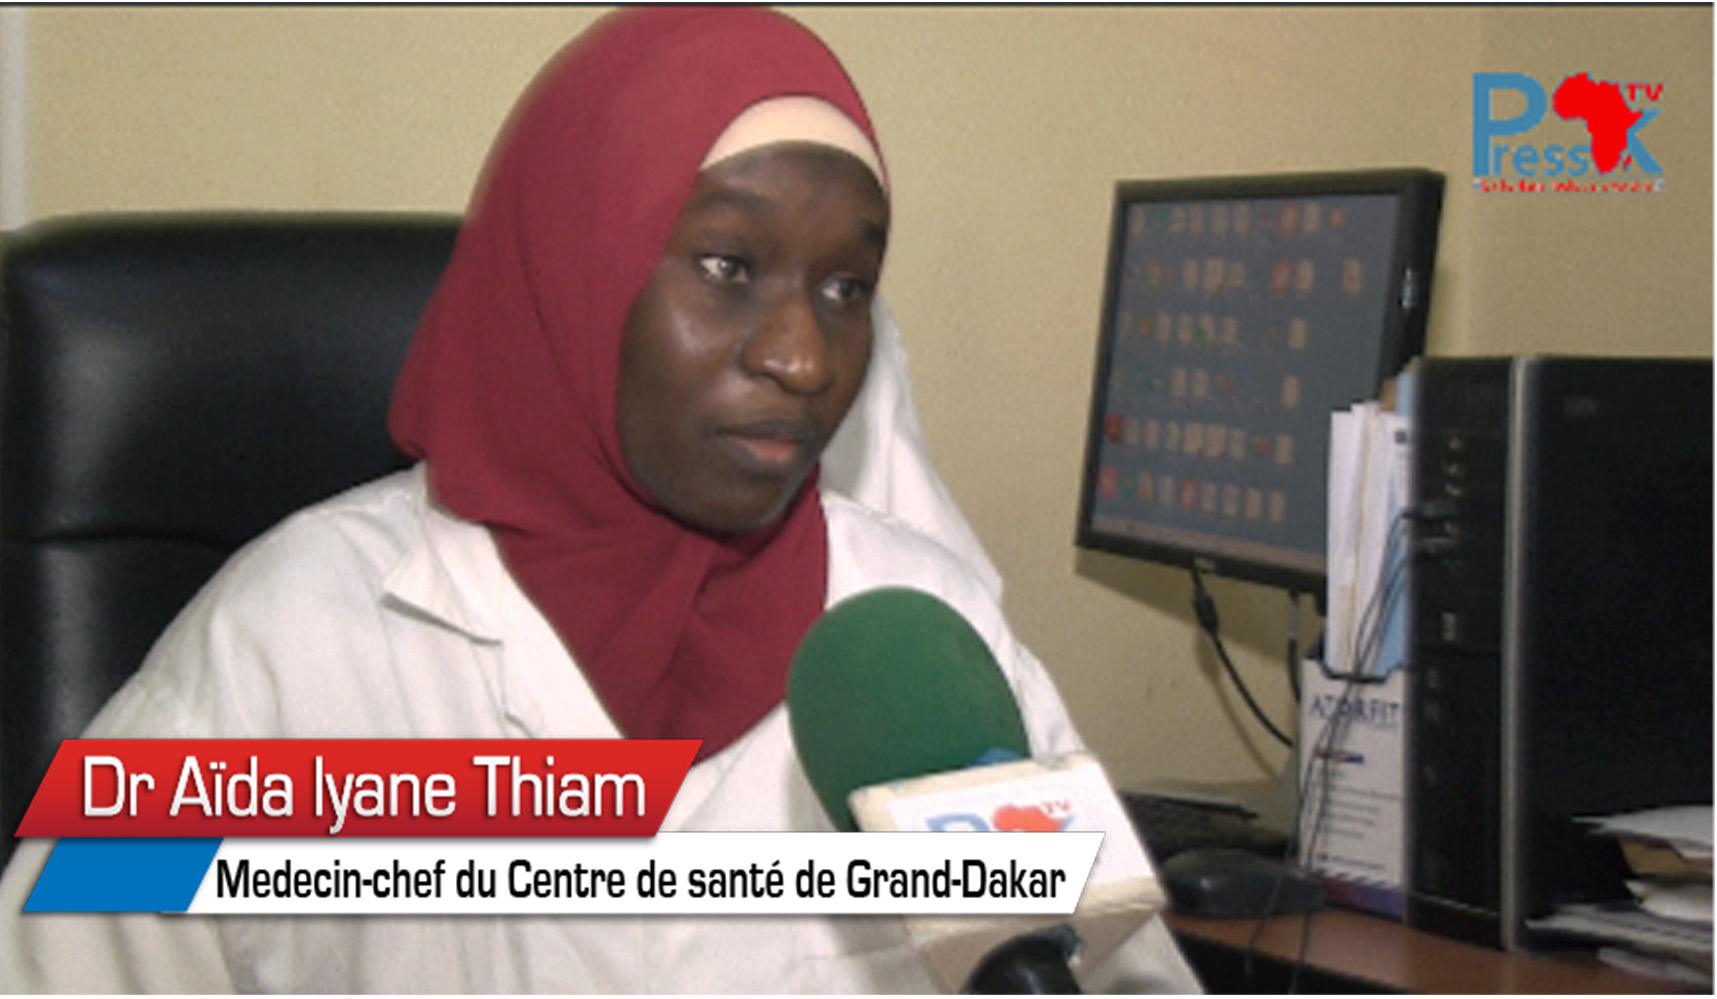 Maladies cardiovasculaires, risques et mortalité: Docteur Aïda Iyane Thiam en parle 